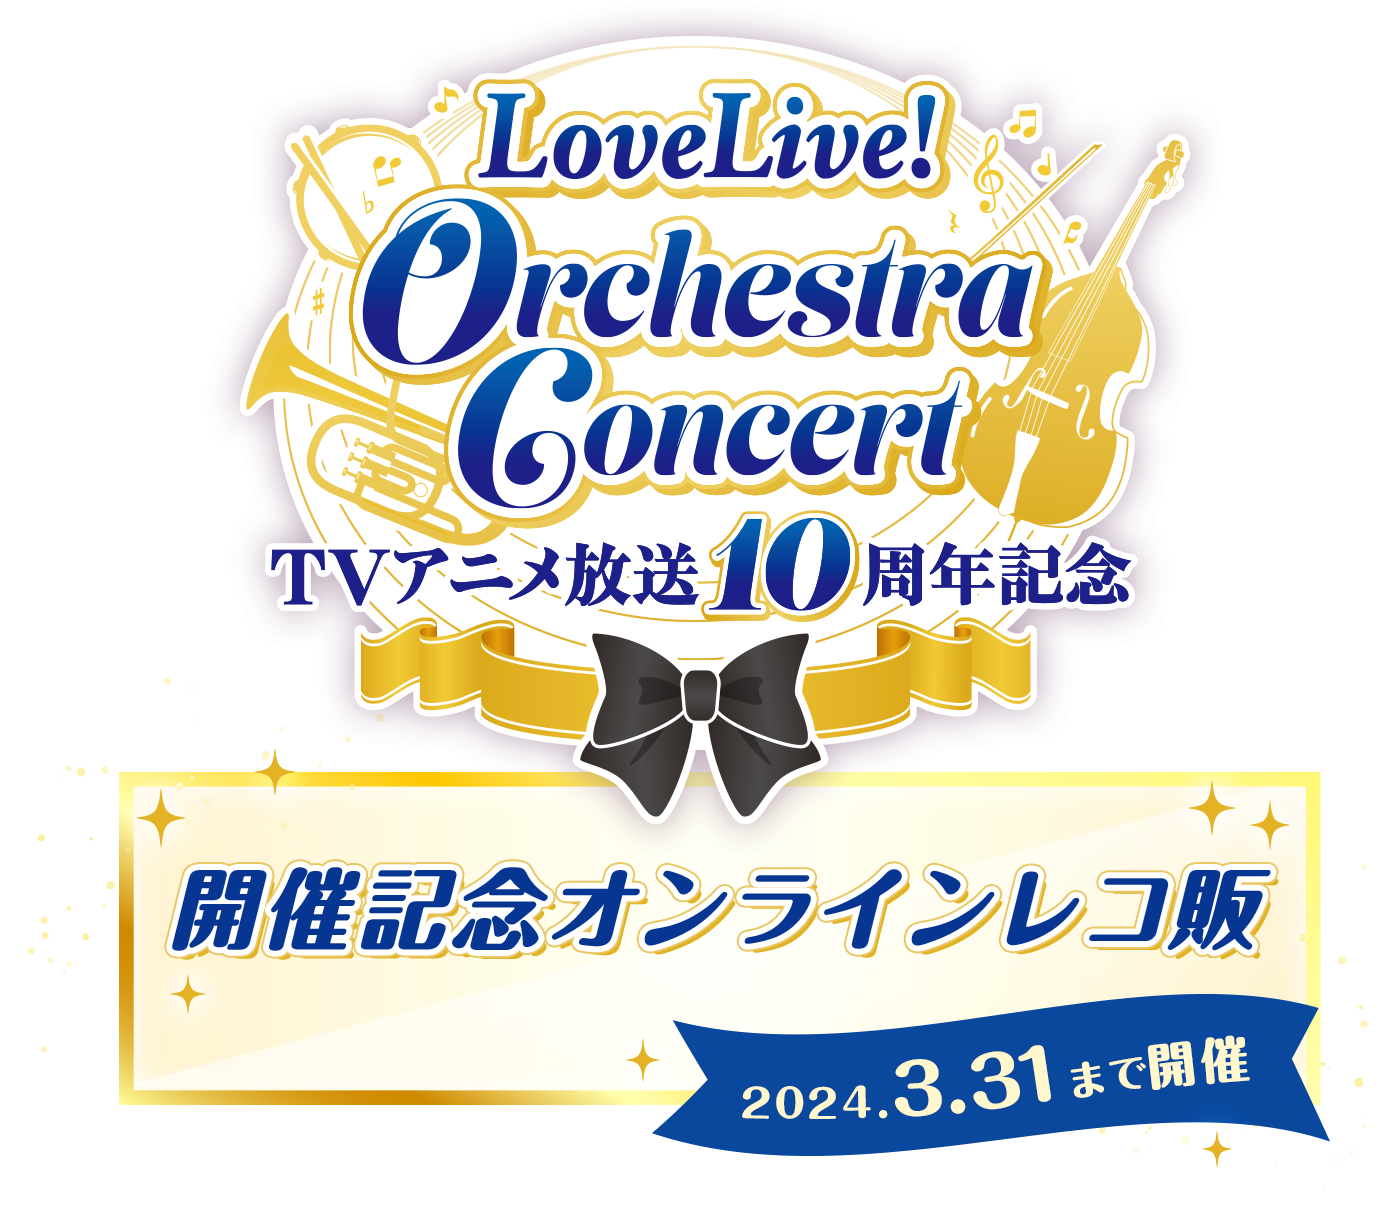 TVアニメ放送10周年記念 LoveLive! Special Concert」開催記念 